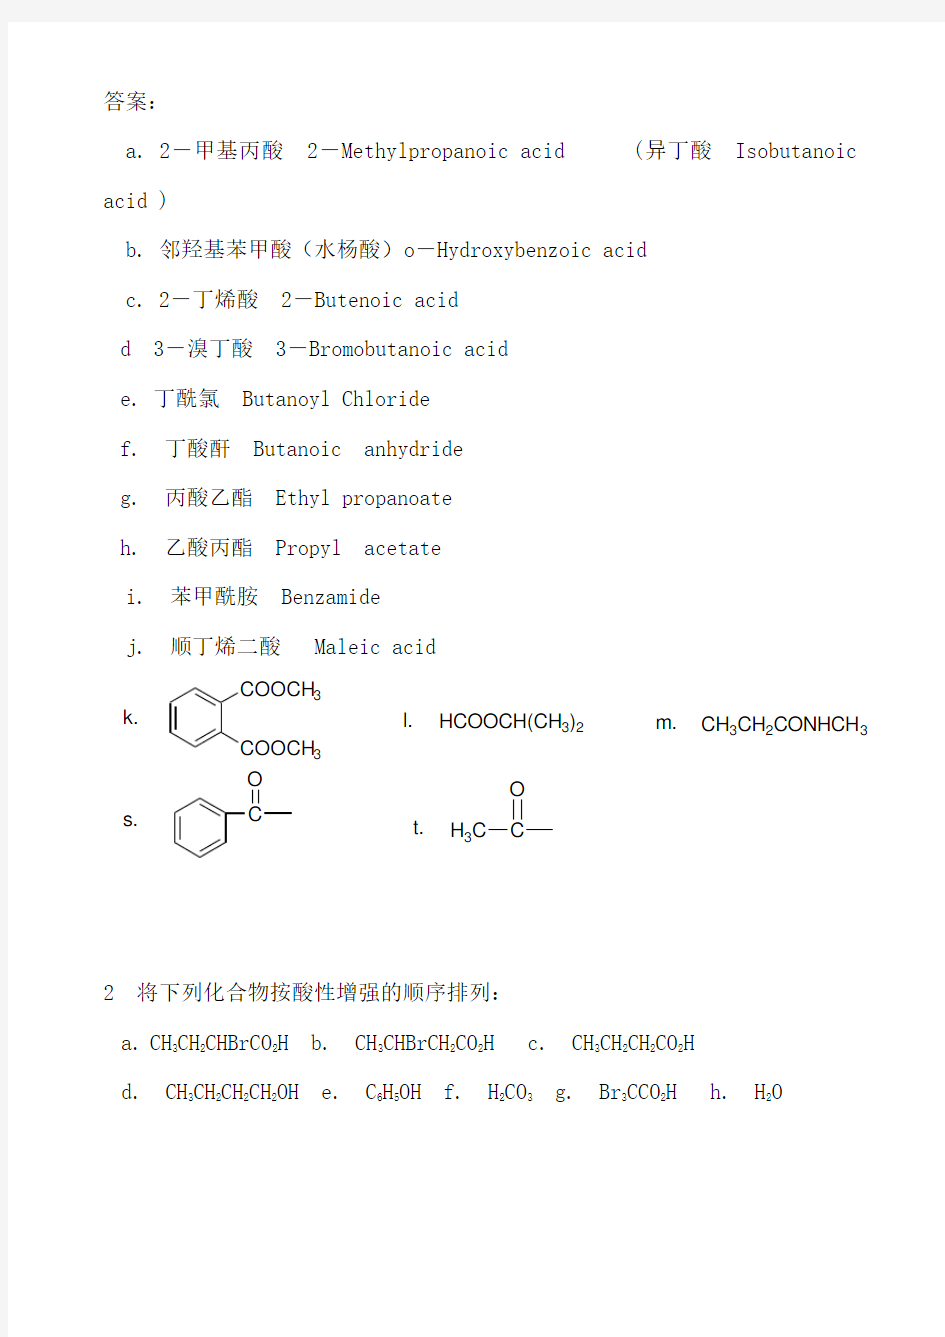 羧酸及其衍生物_习题